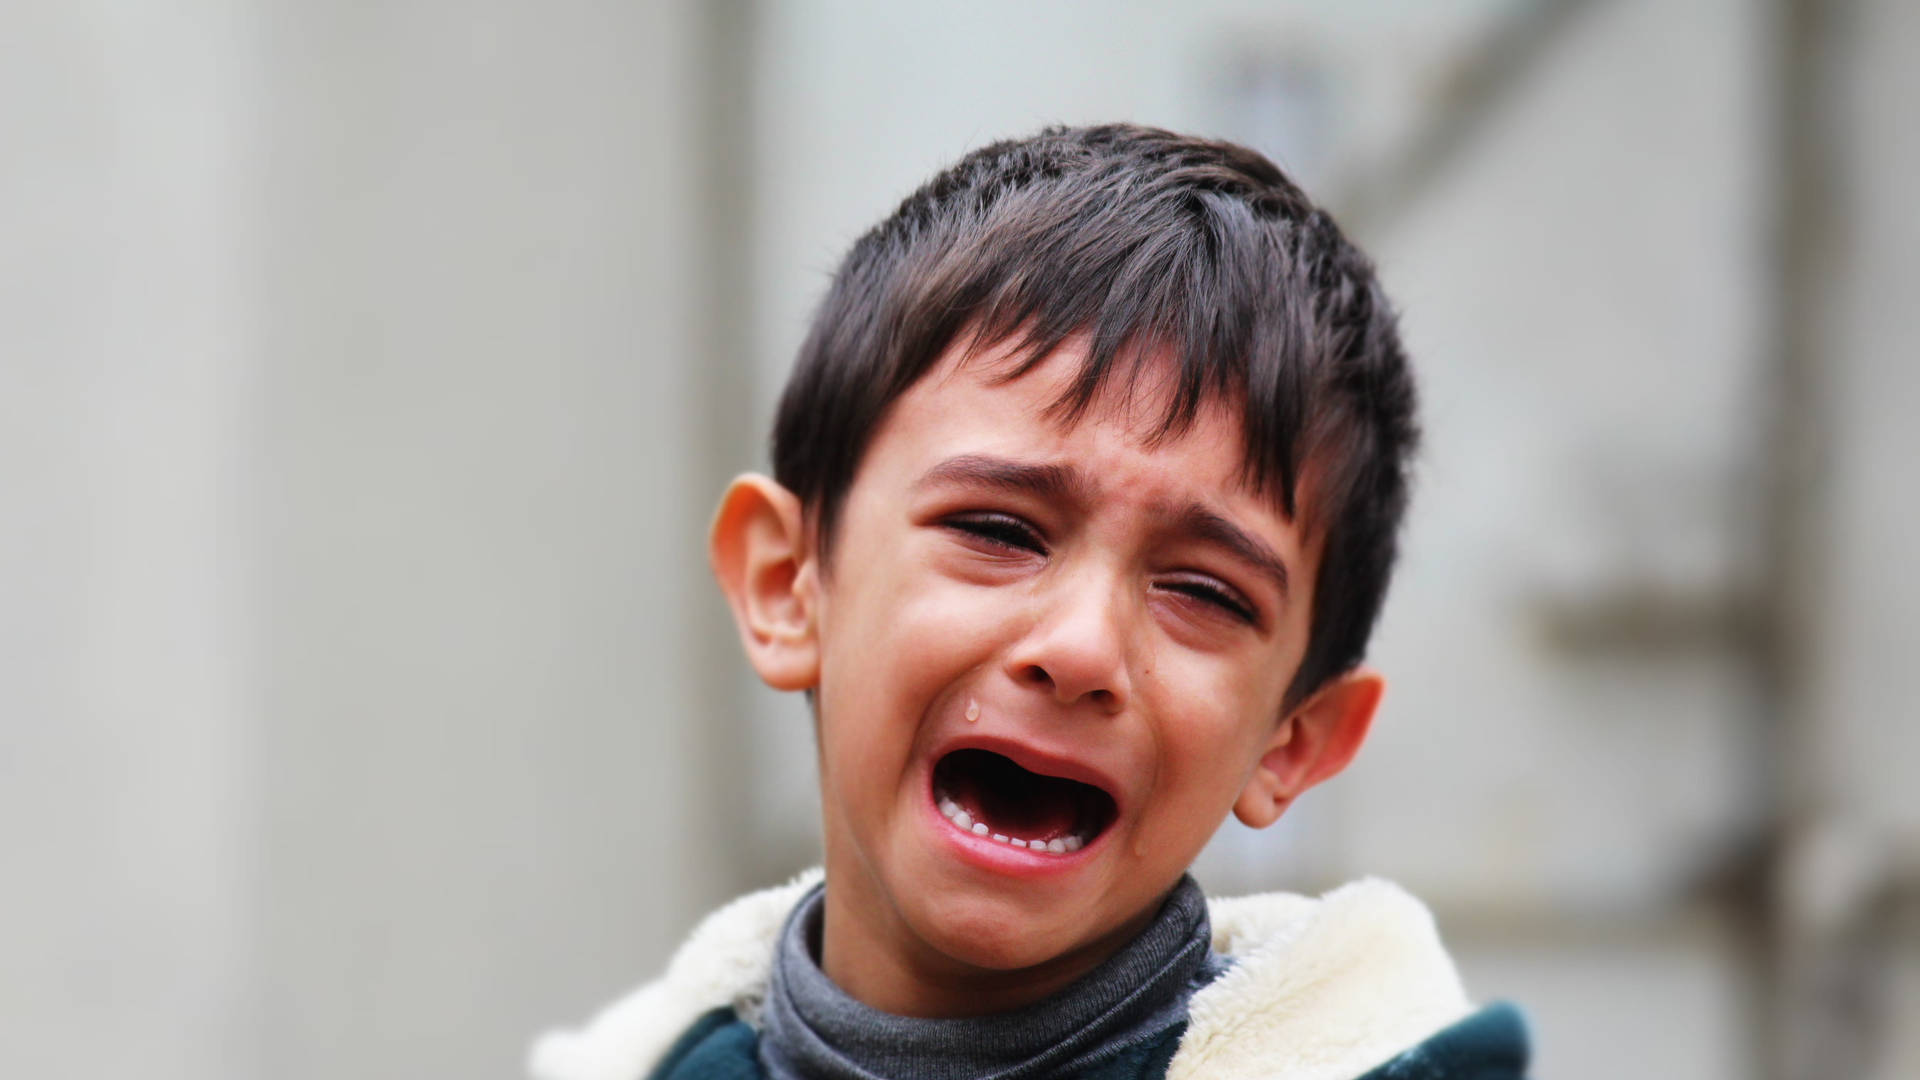 Iraqi Crying Sad Boy